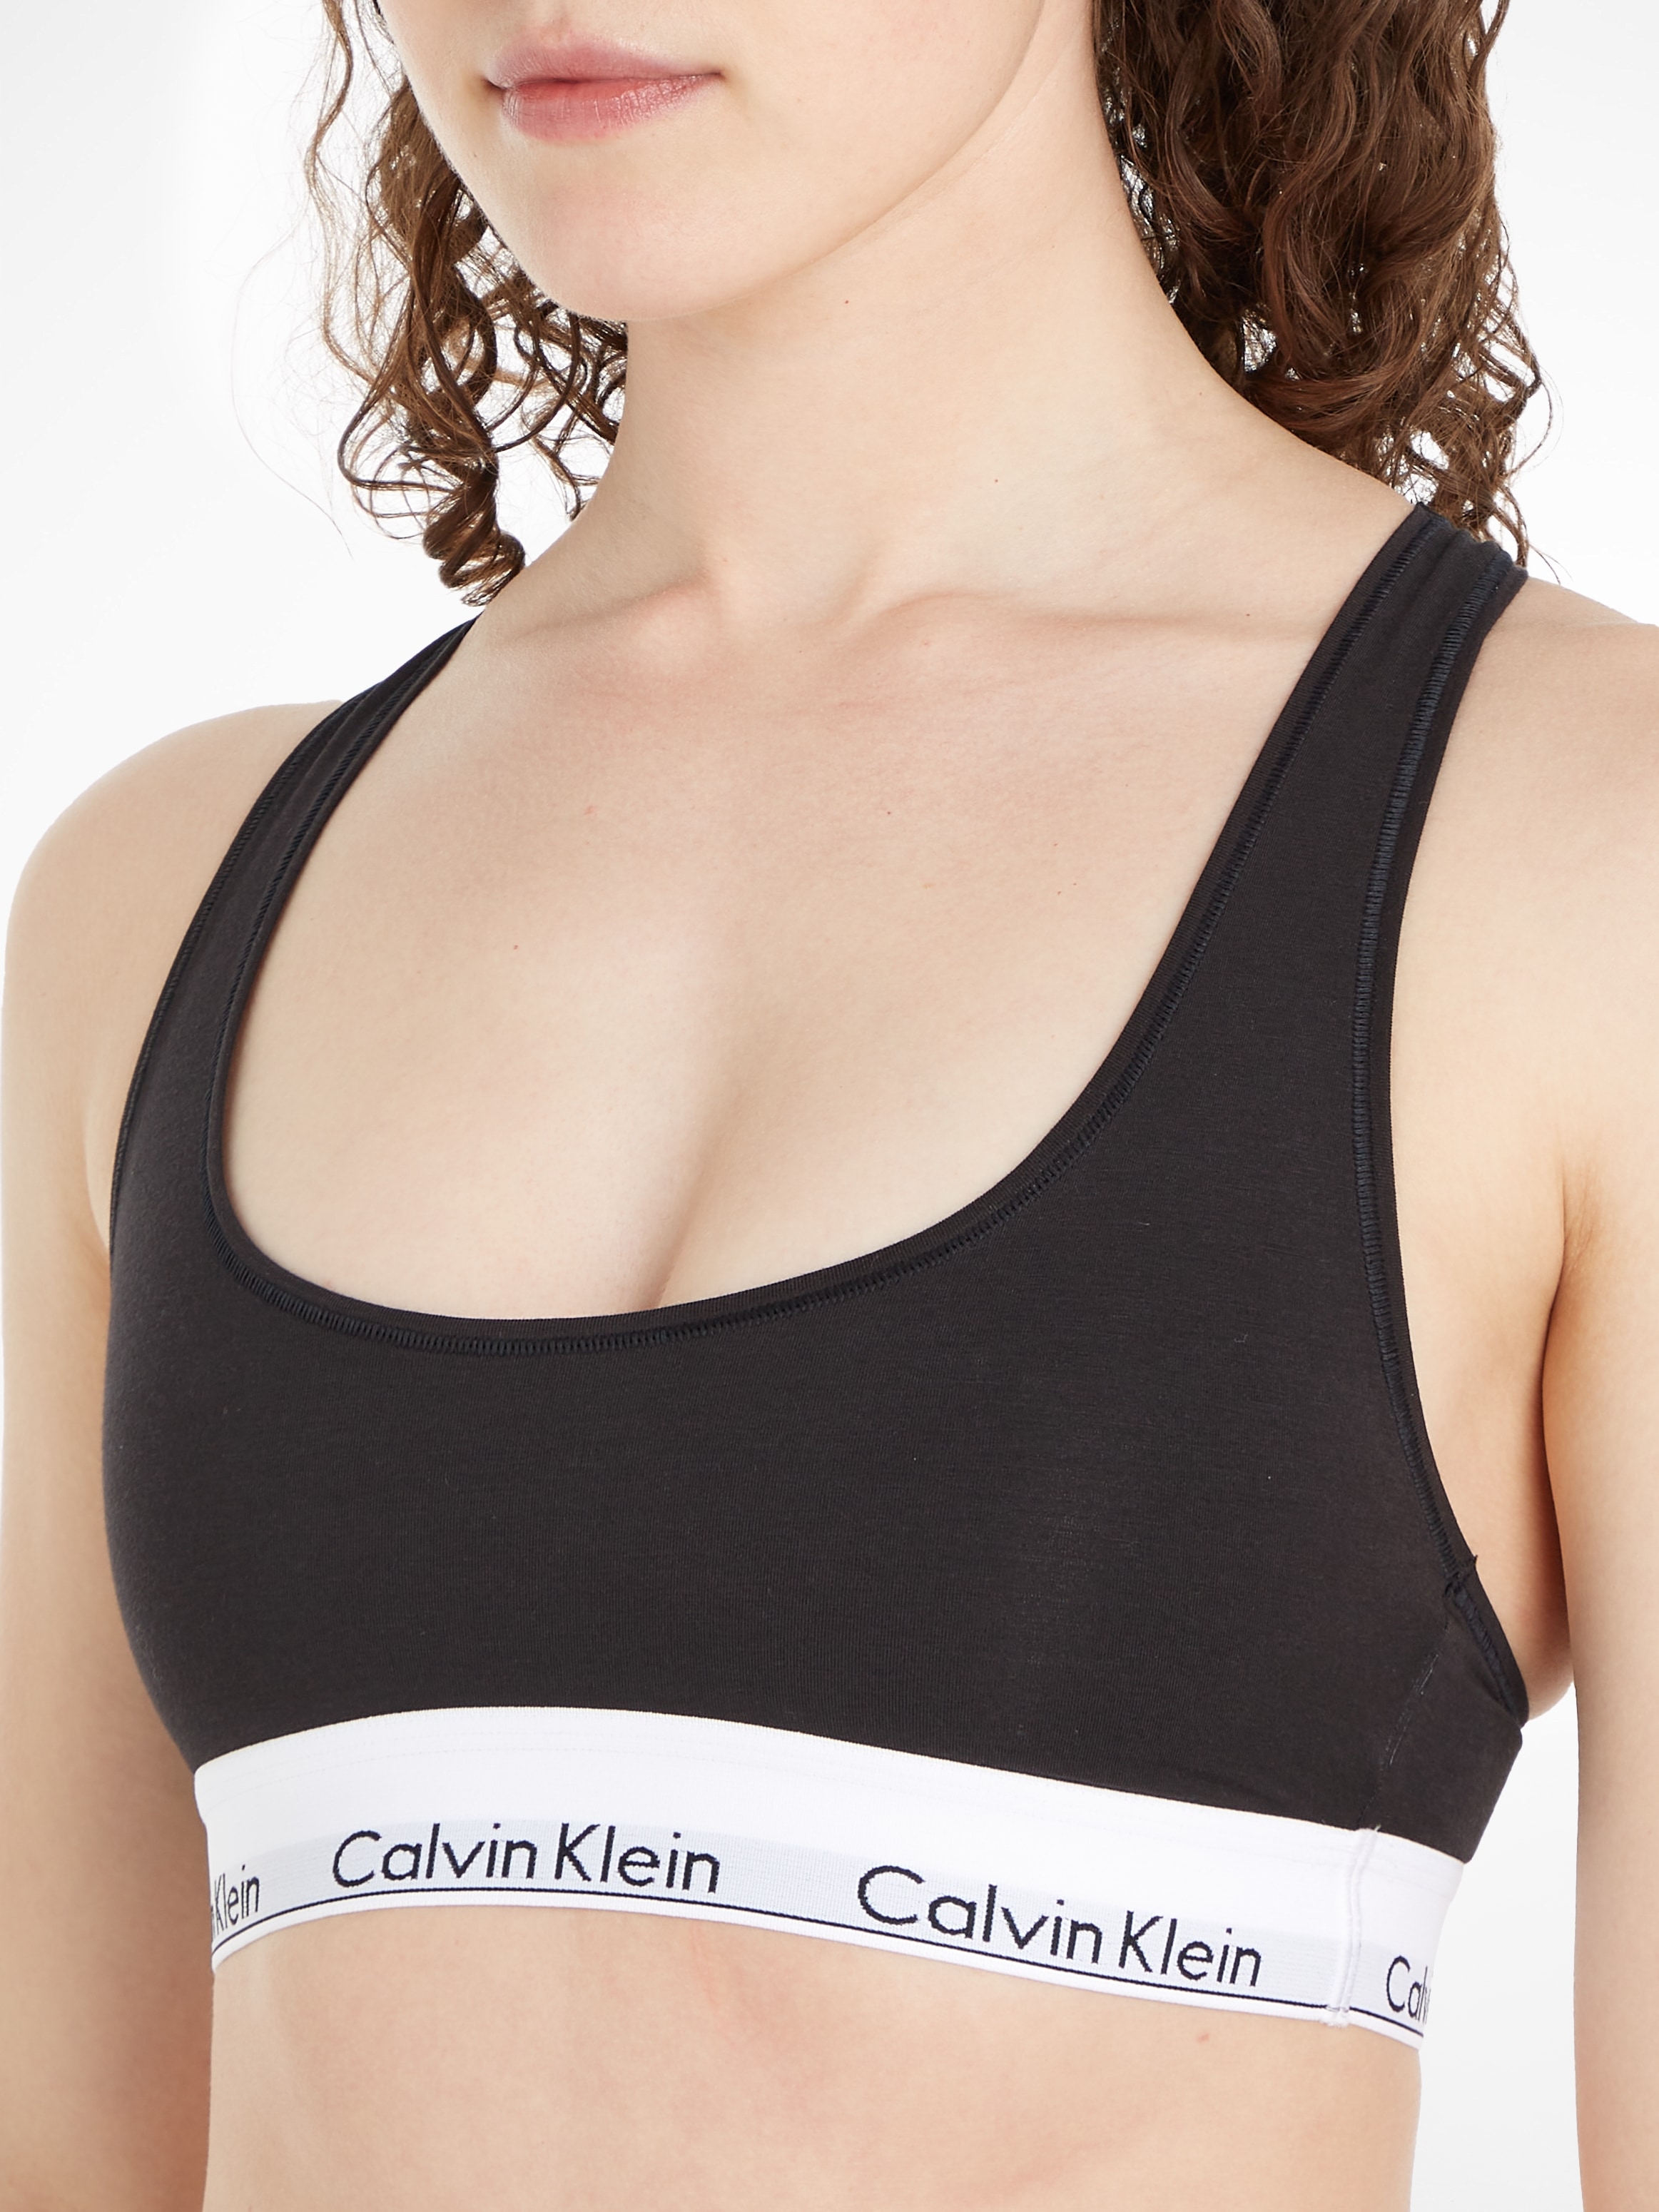 BAUR »Modern Klein Cotton«, Racerback mit Calvin | Bustier kaufen